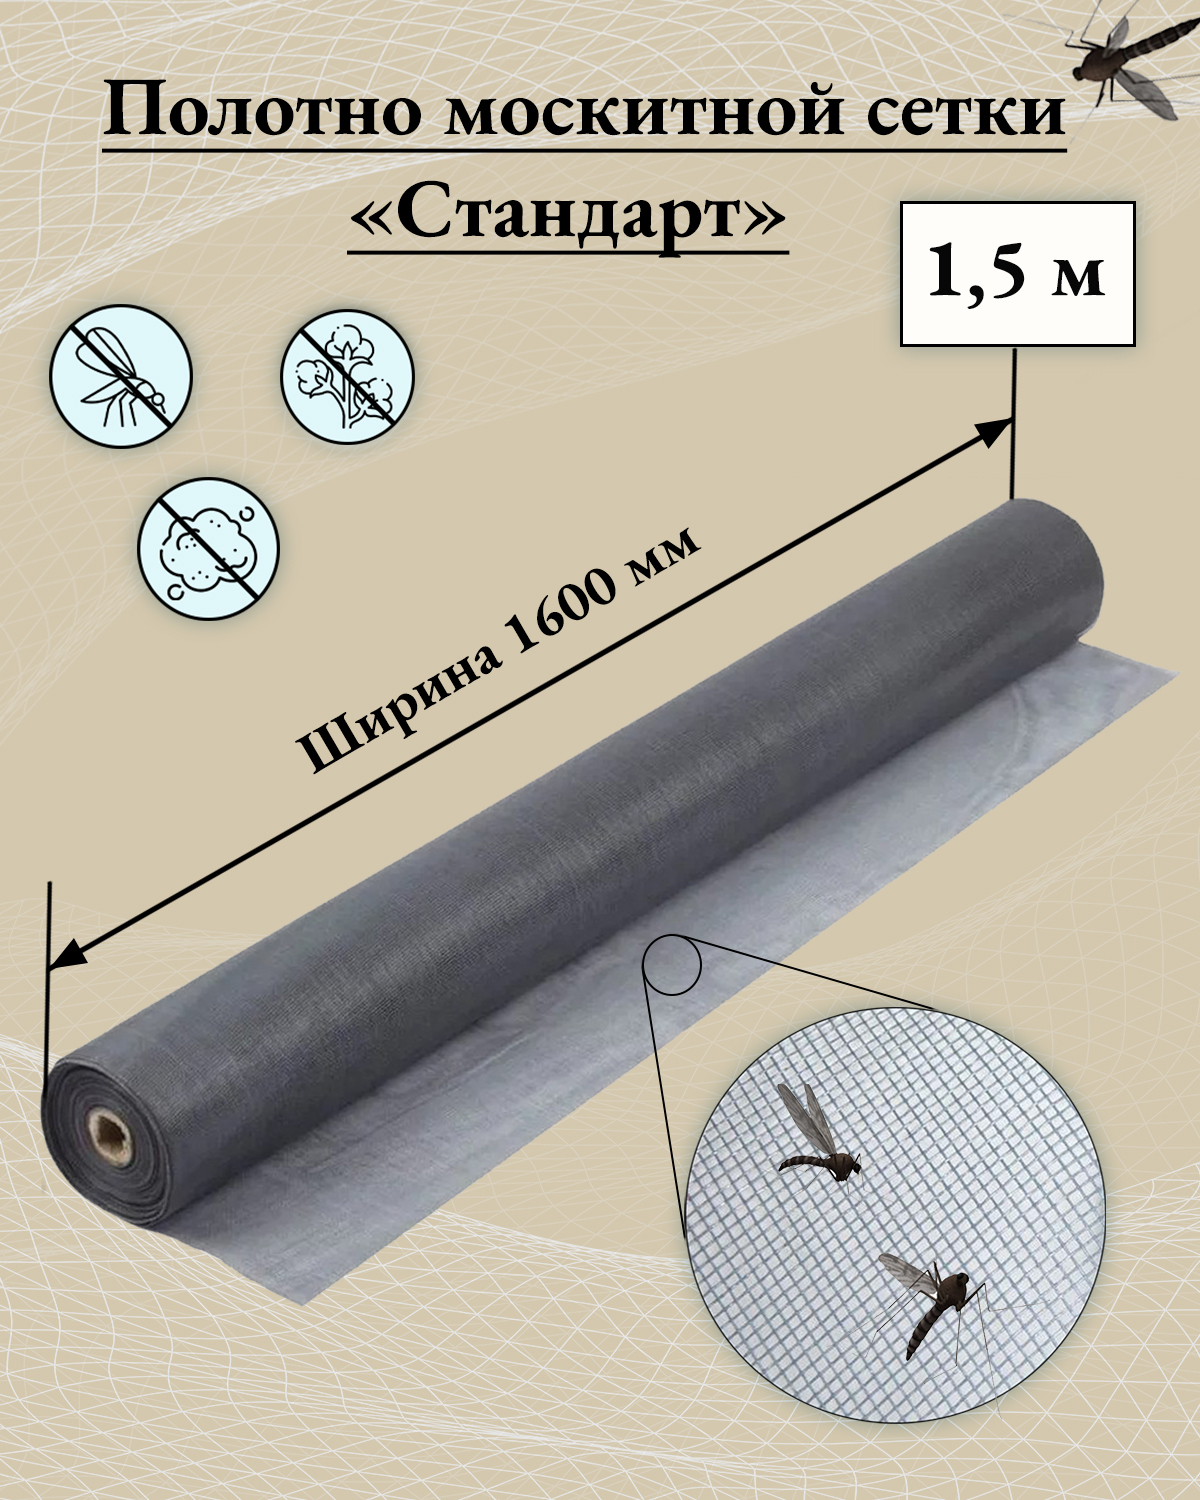 Москитные сетки Contractor - купить в Москве - Мегамаркет